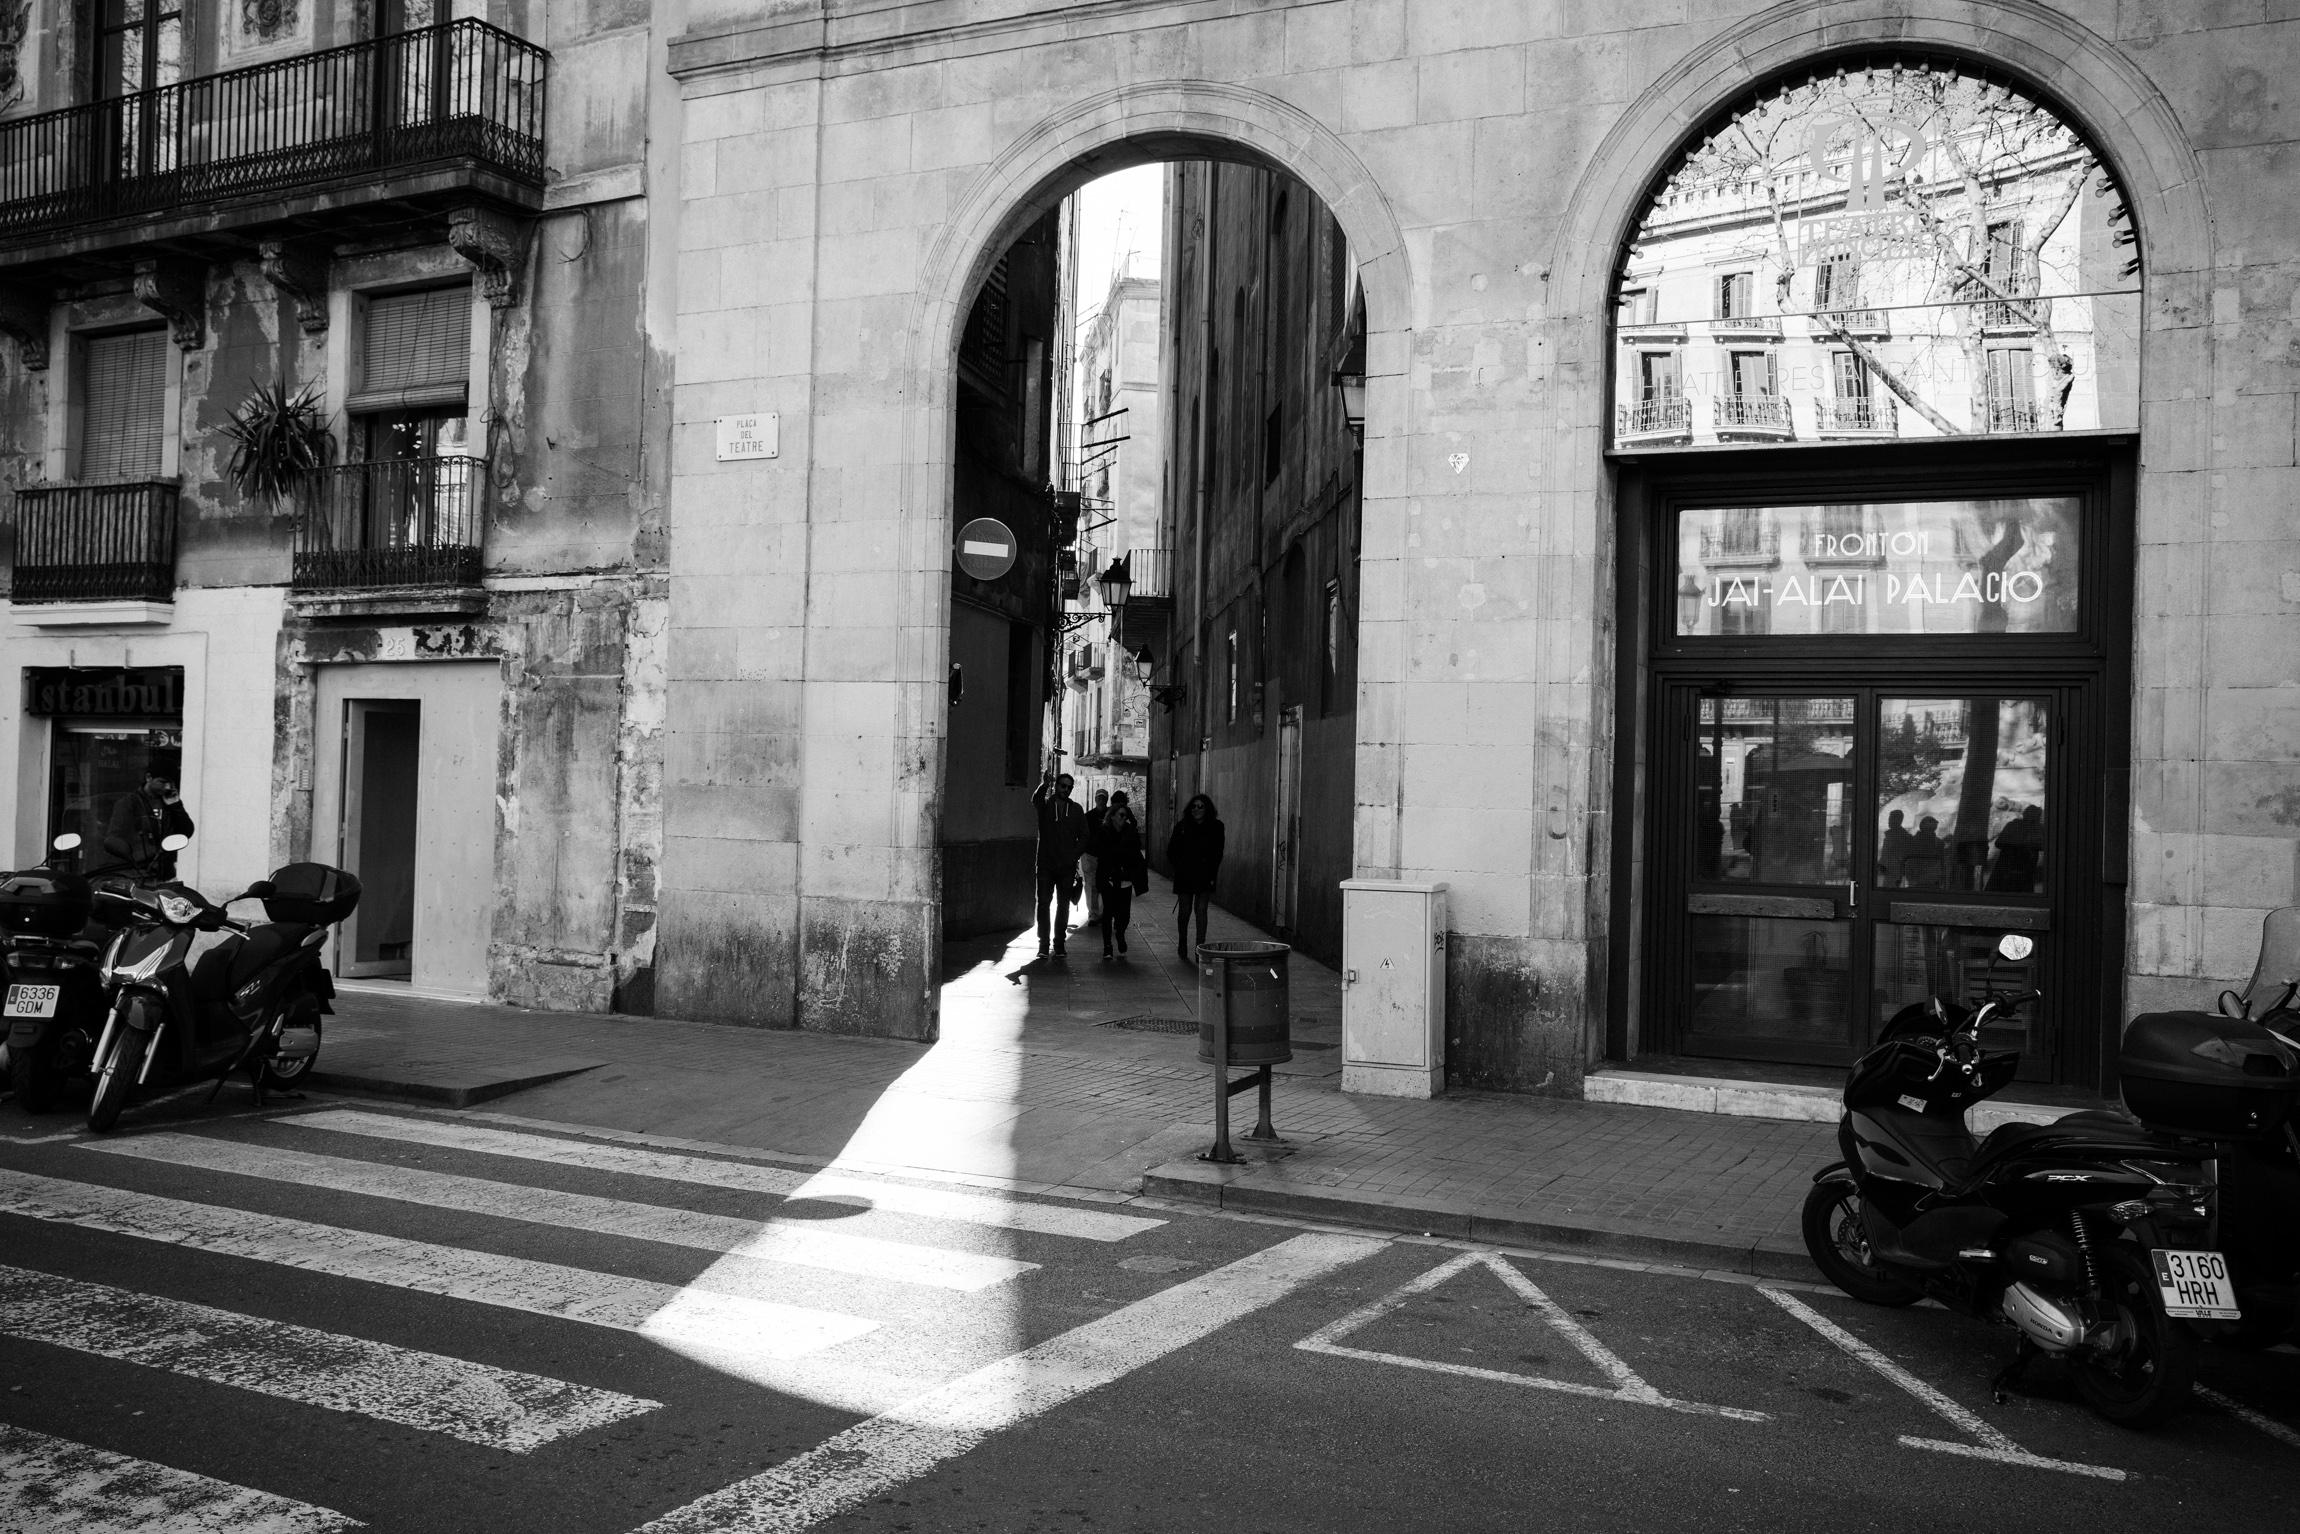 Gallery Barcelona - Image 19